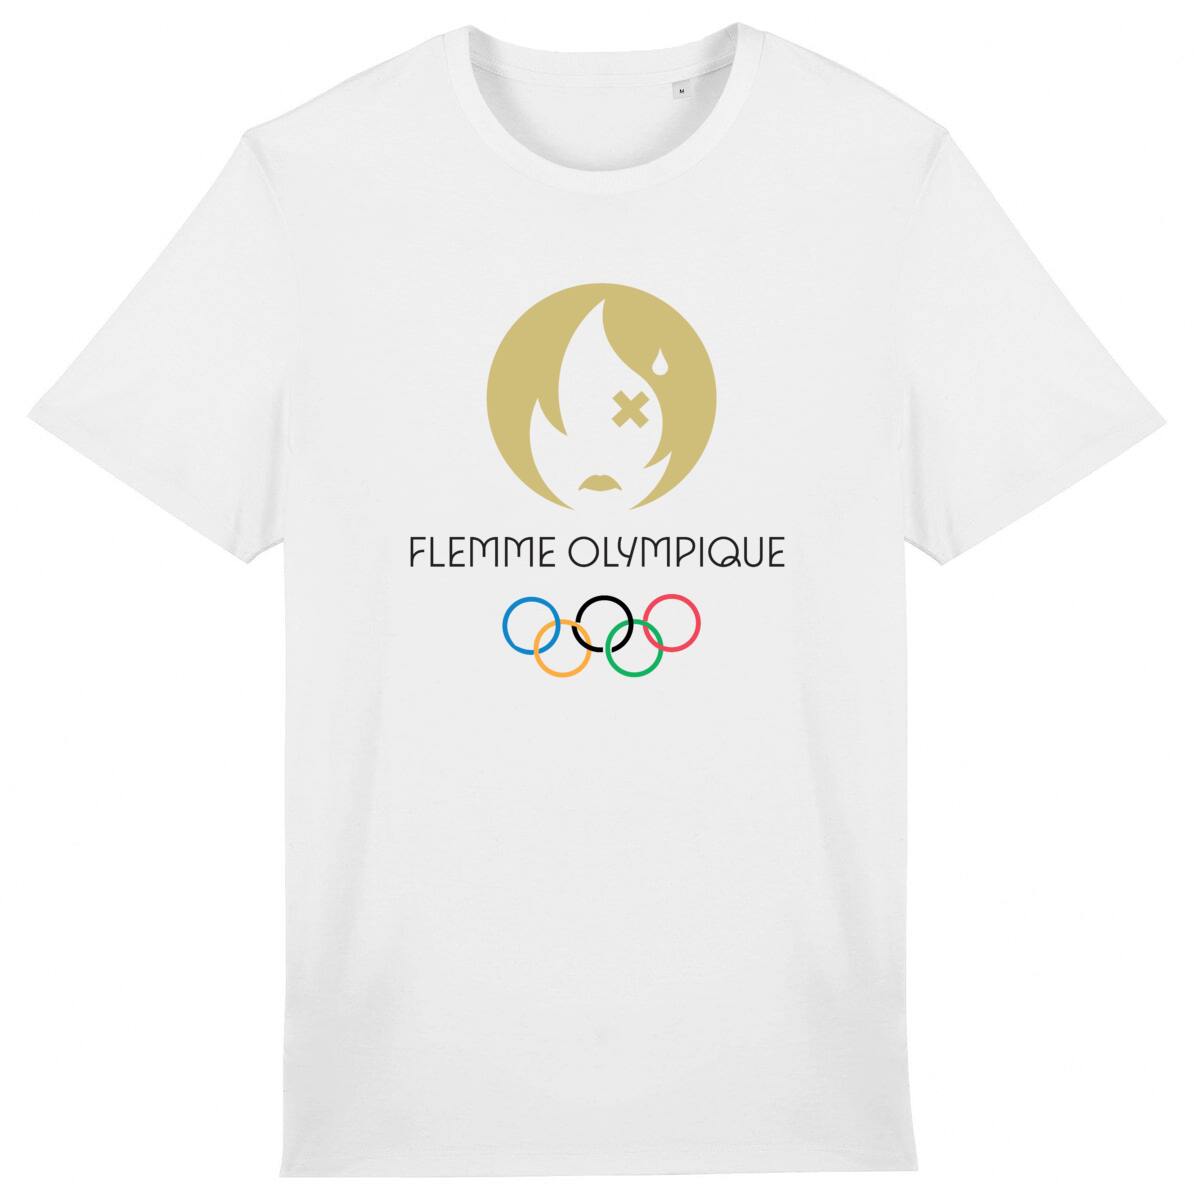 Le T-Shirt de la flemme olympique